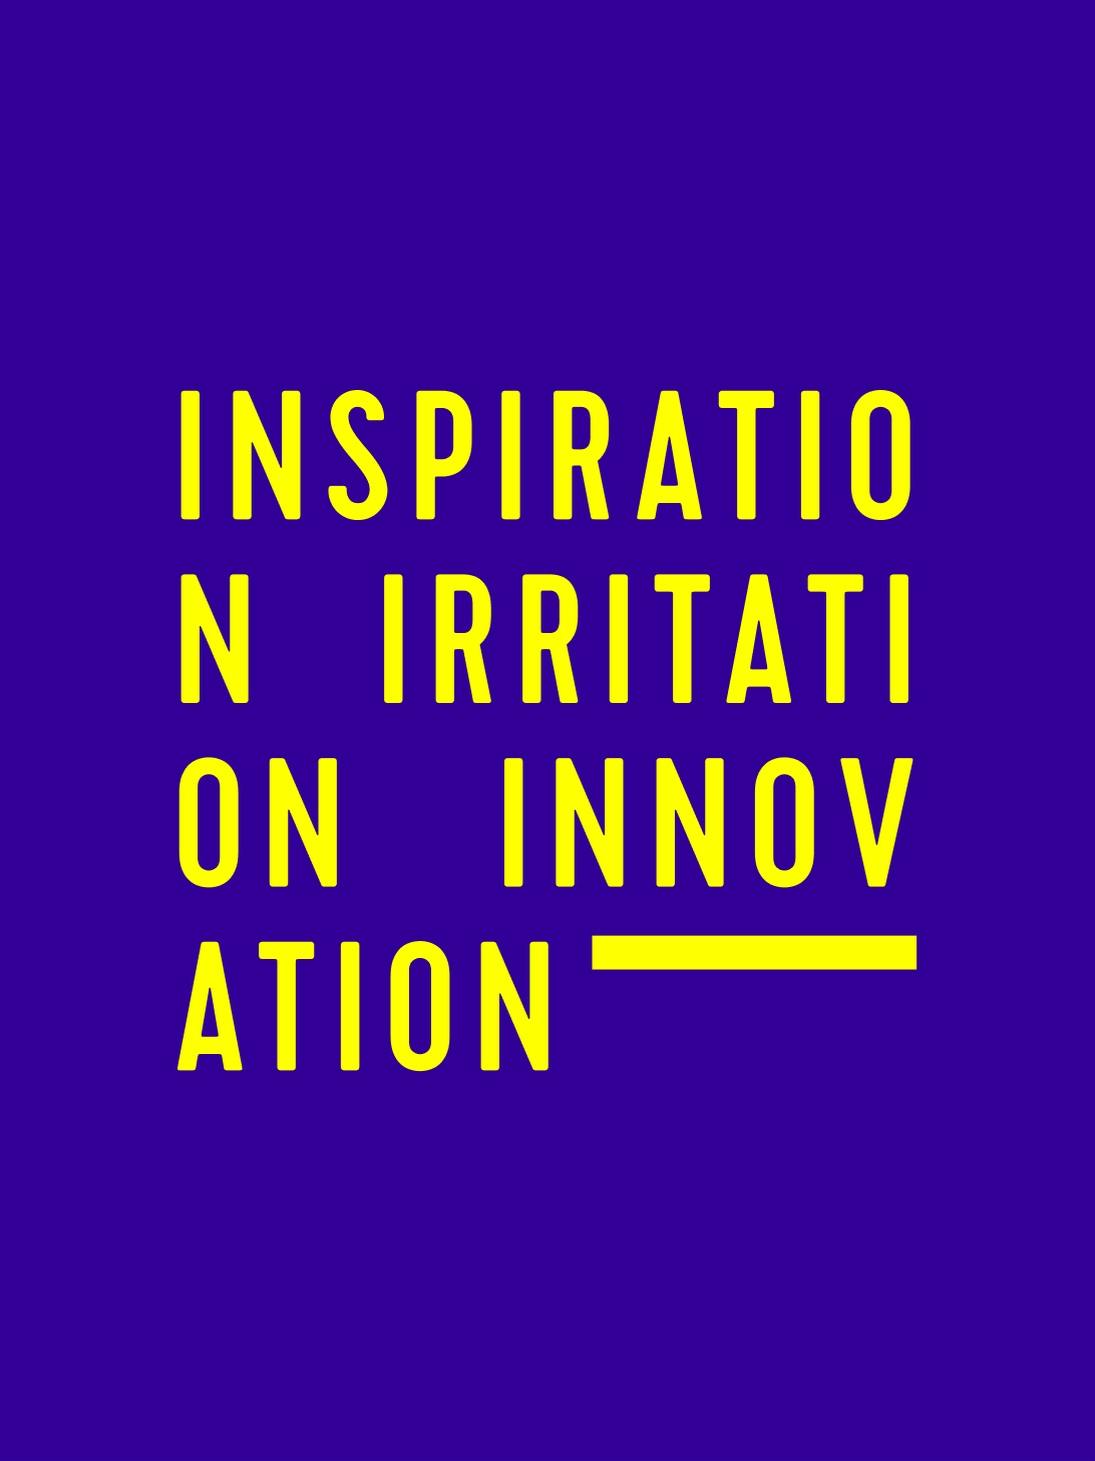 Schriftzug Inspiration Irritation Innovation © good matters